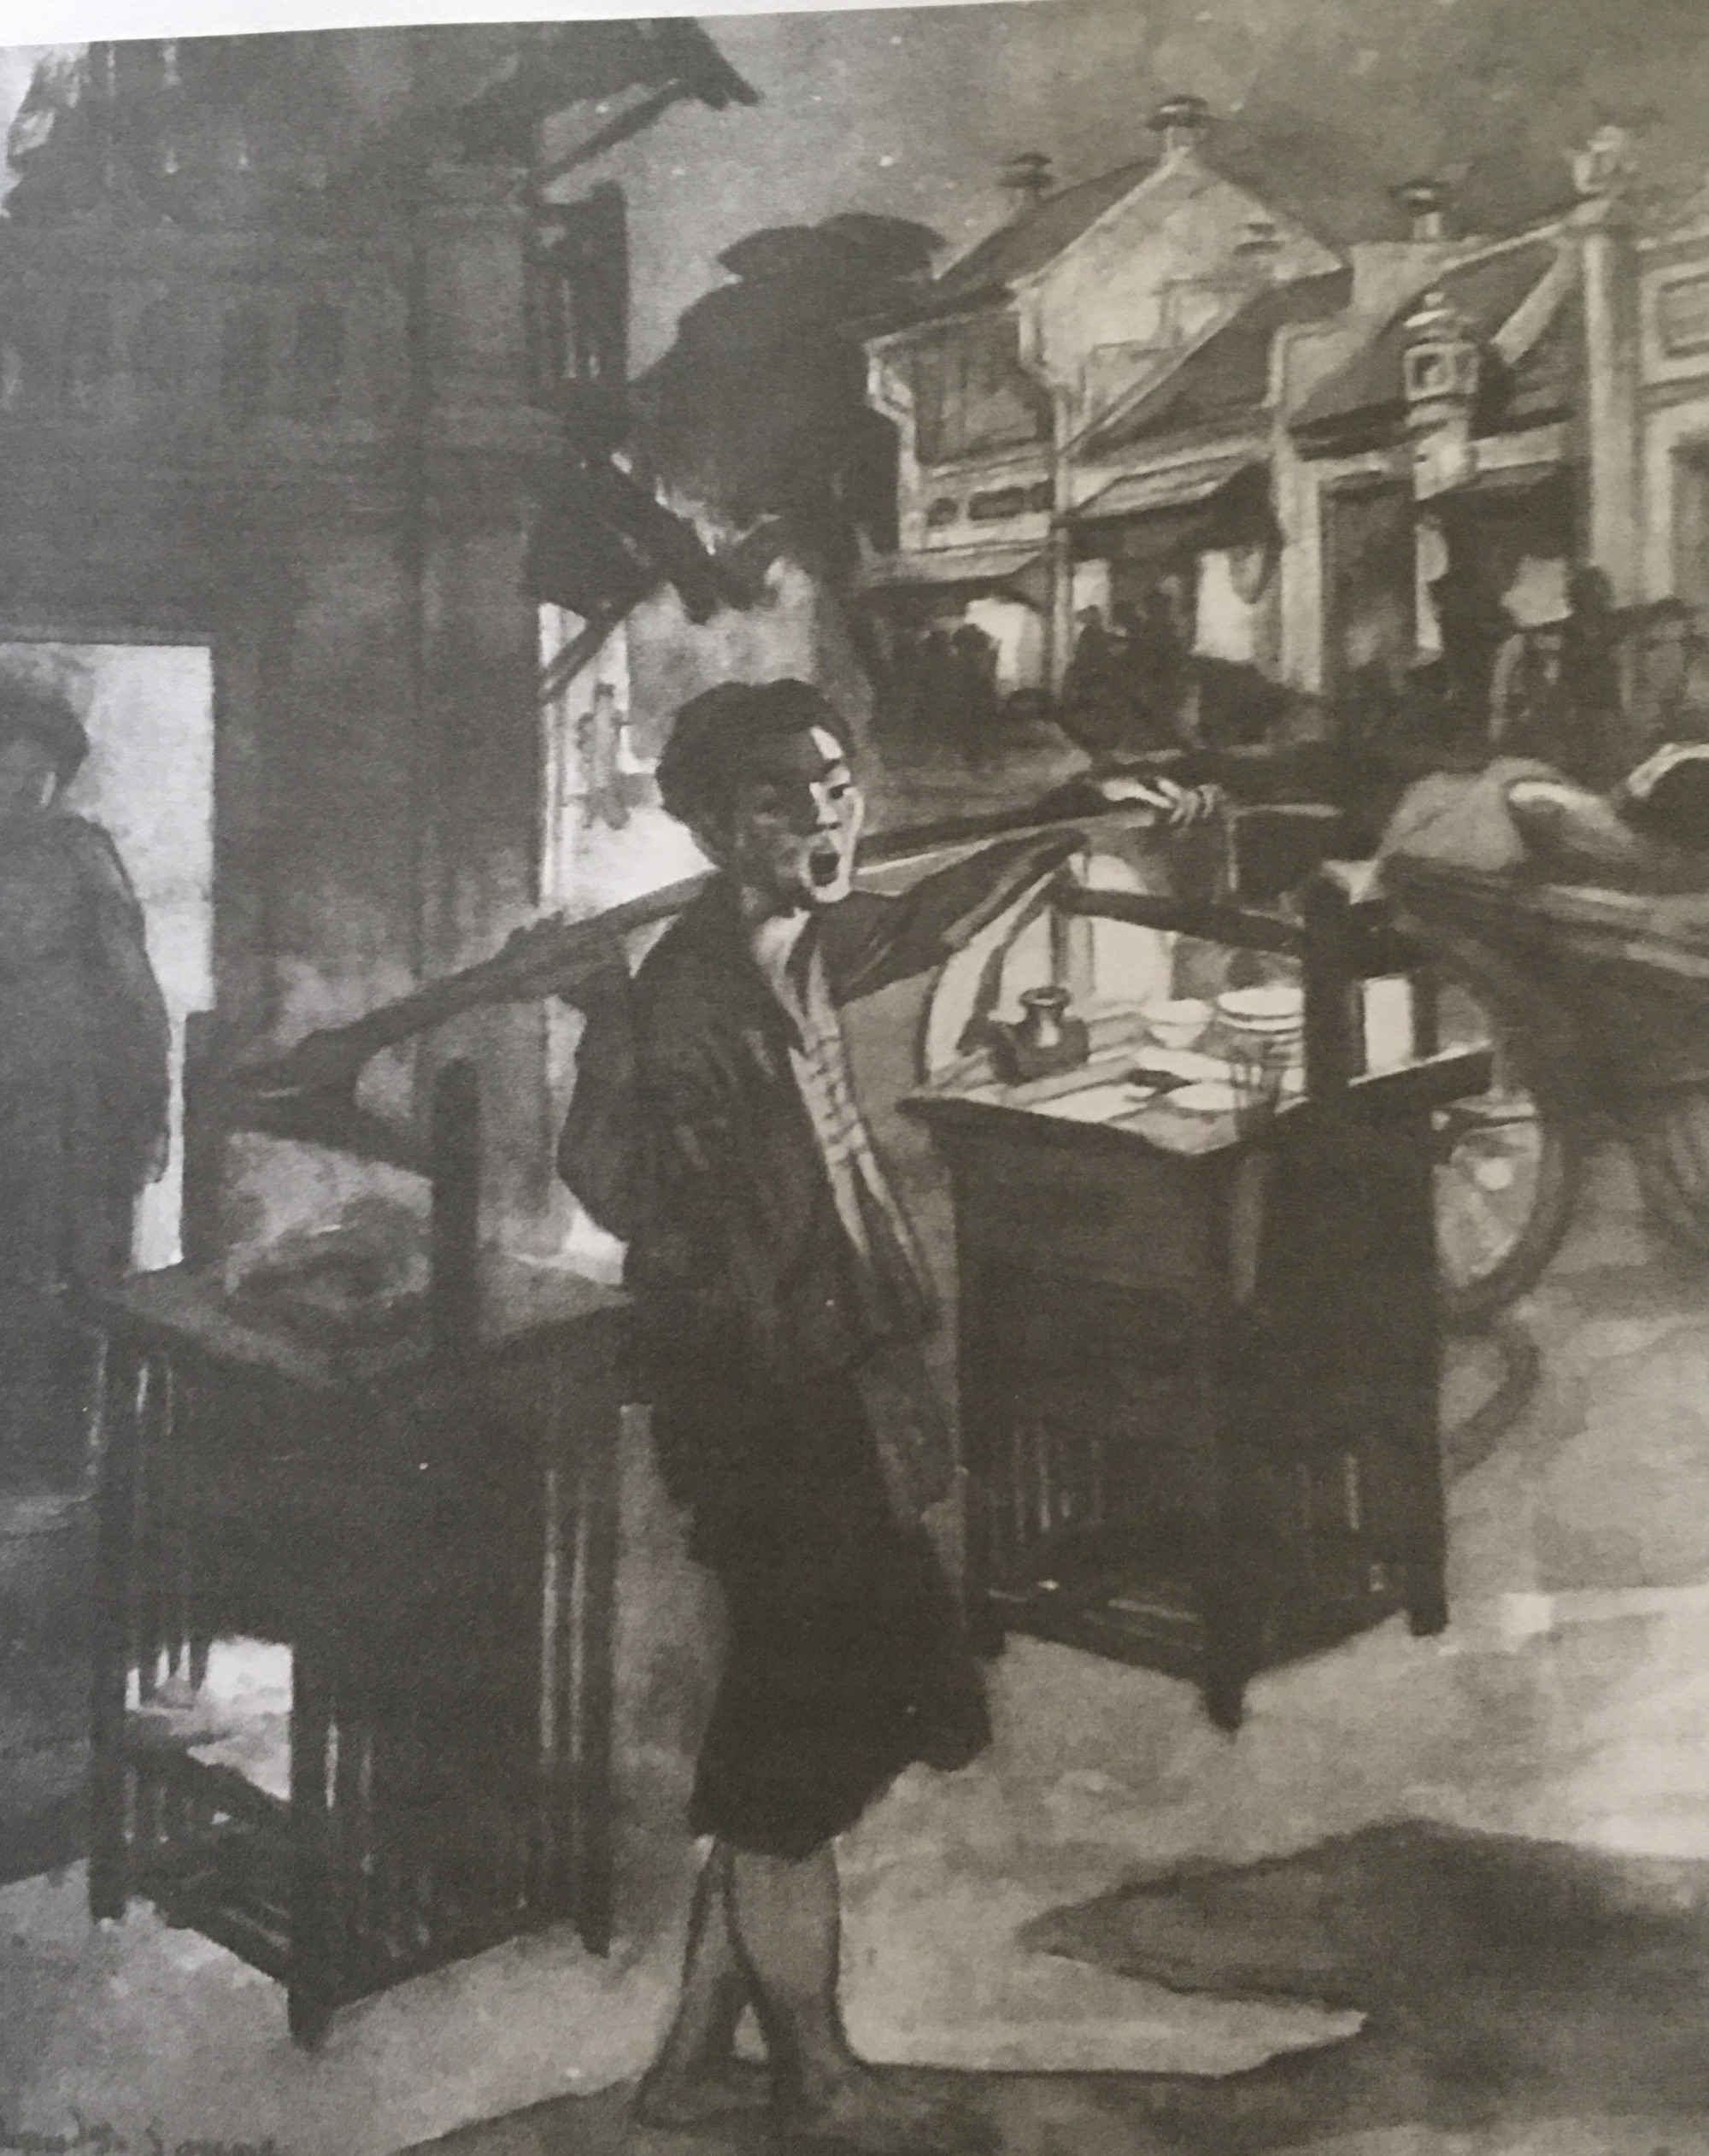 Gánh phở rong ở Đông Kinh 1913, tranh của họa sĩ người Pháp Maurice Sailge